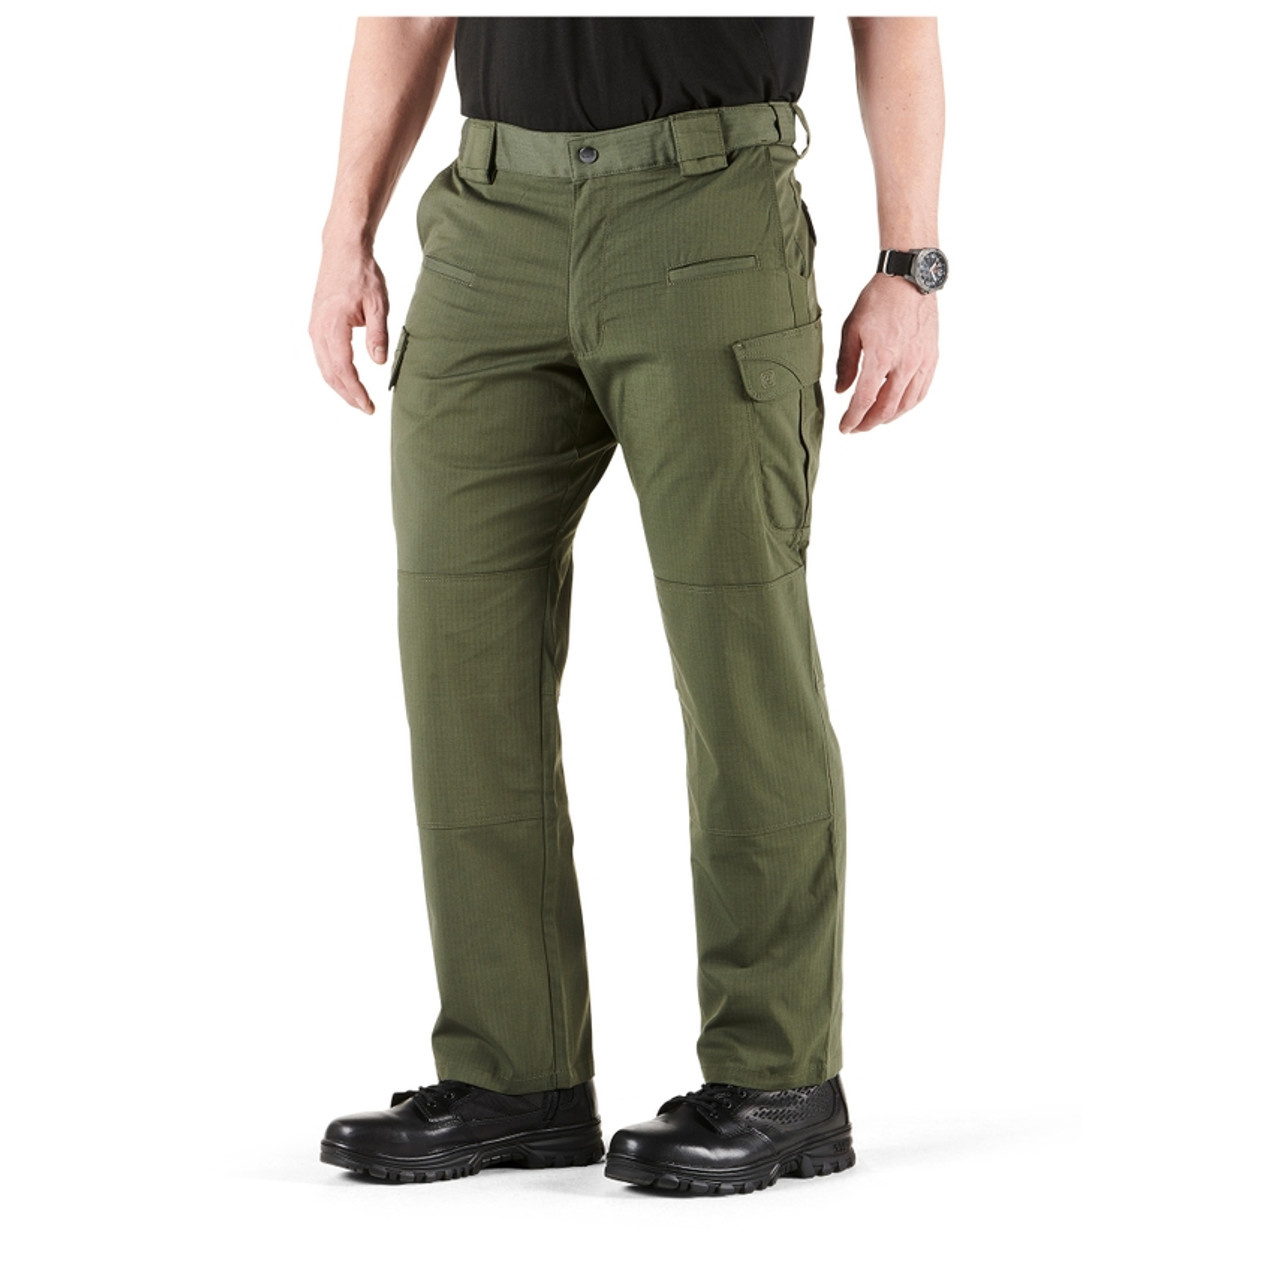 24-7 Tru-Spec Original Tactical Pants – Shop